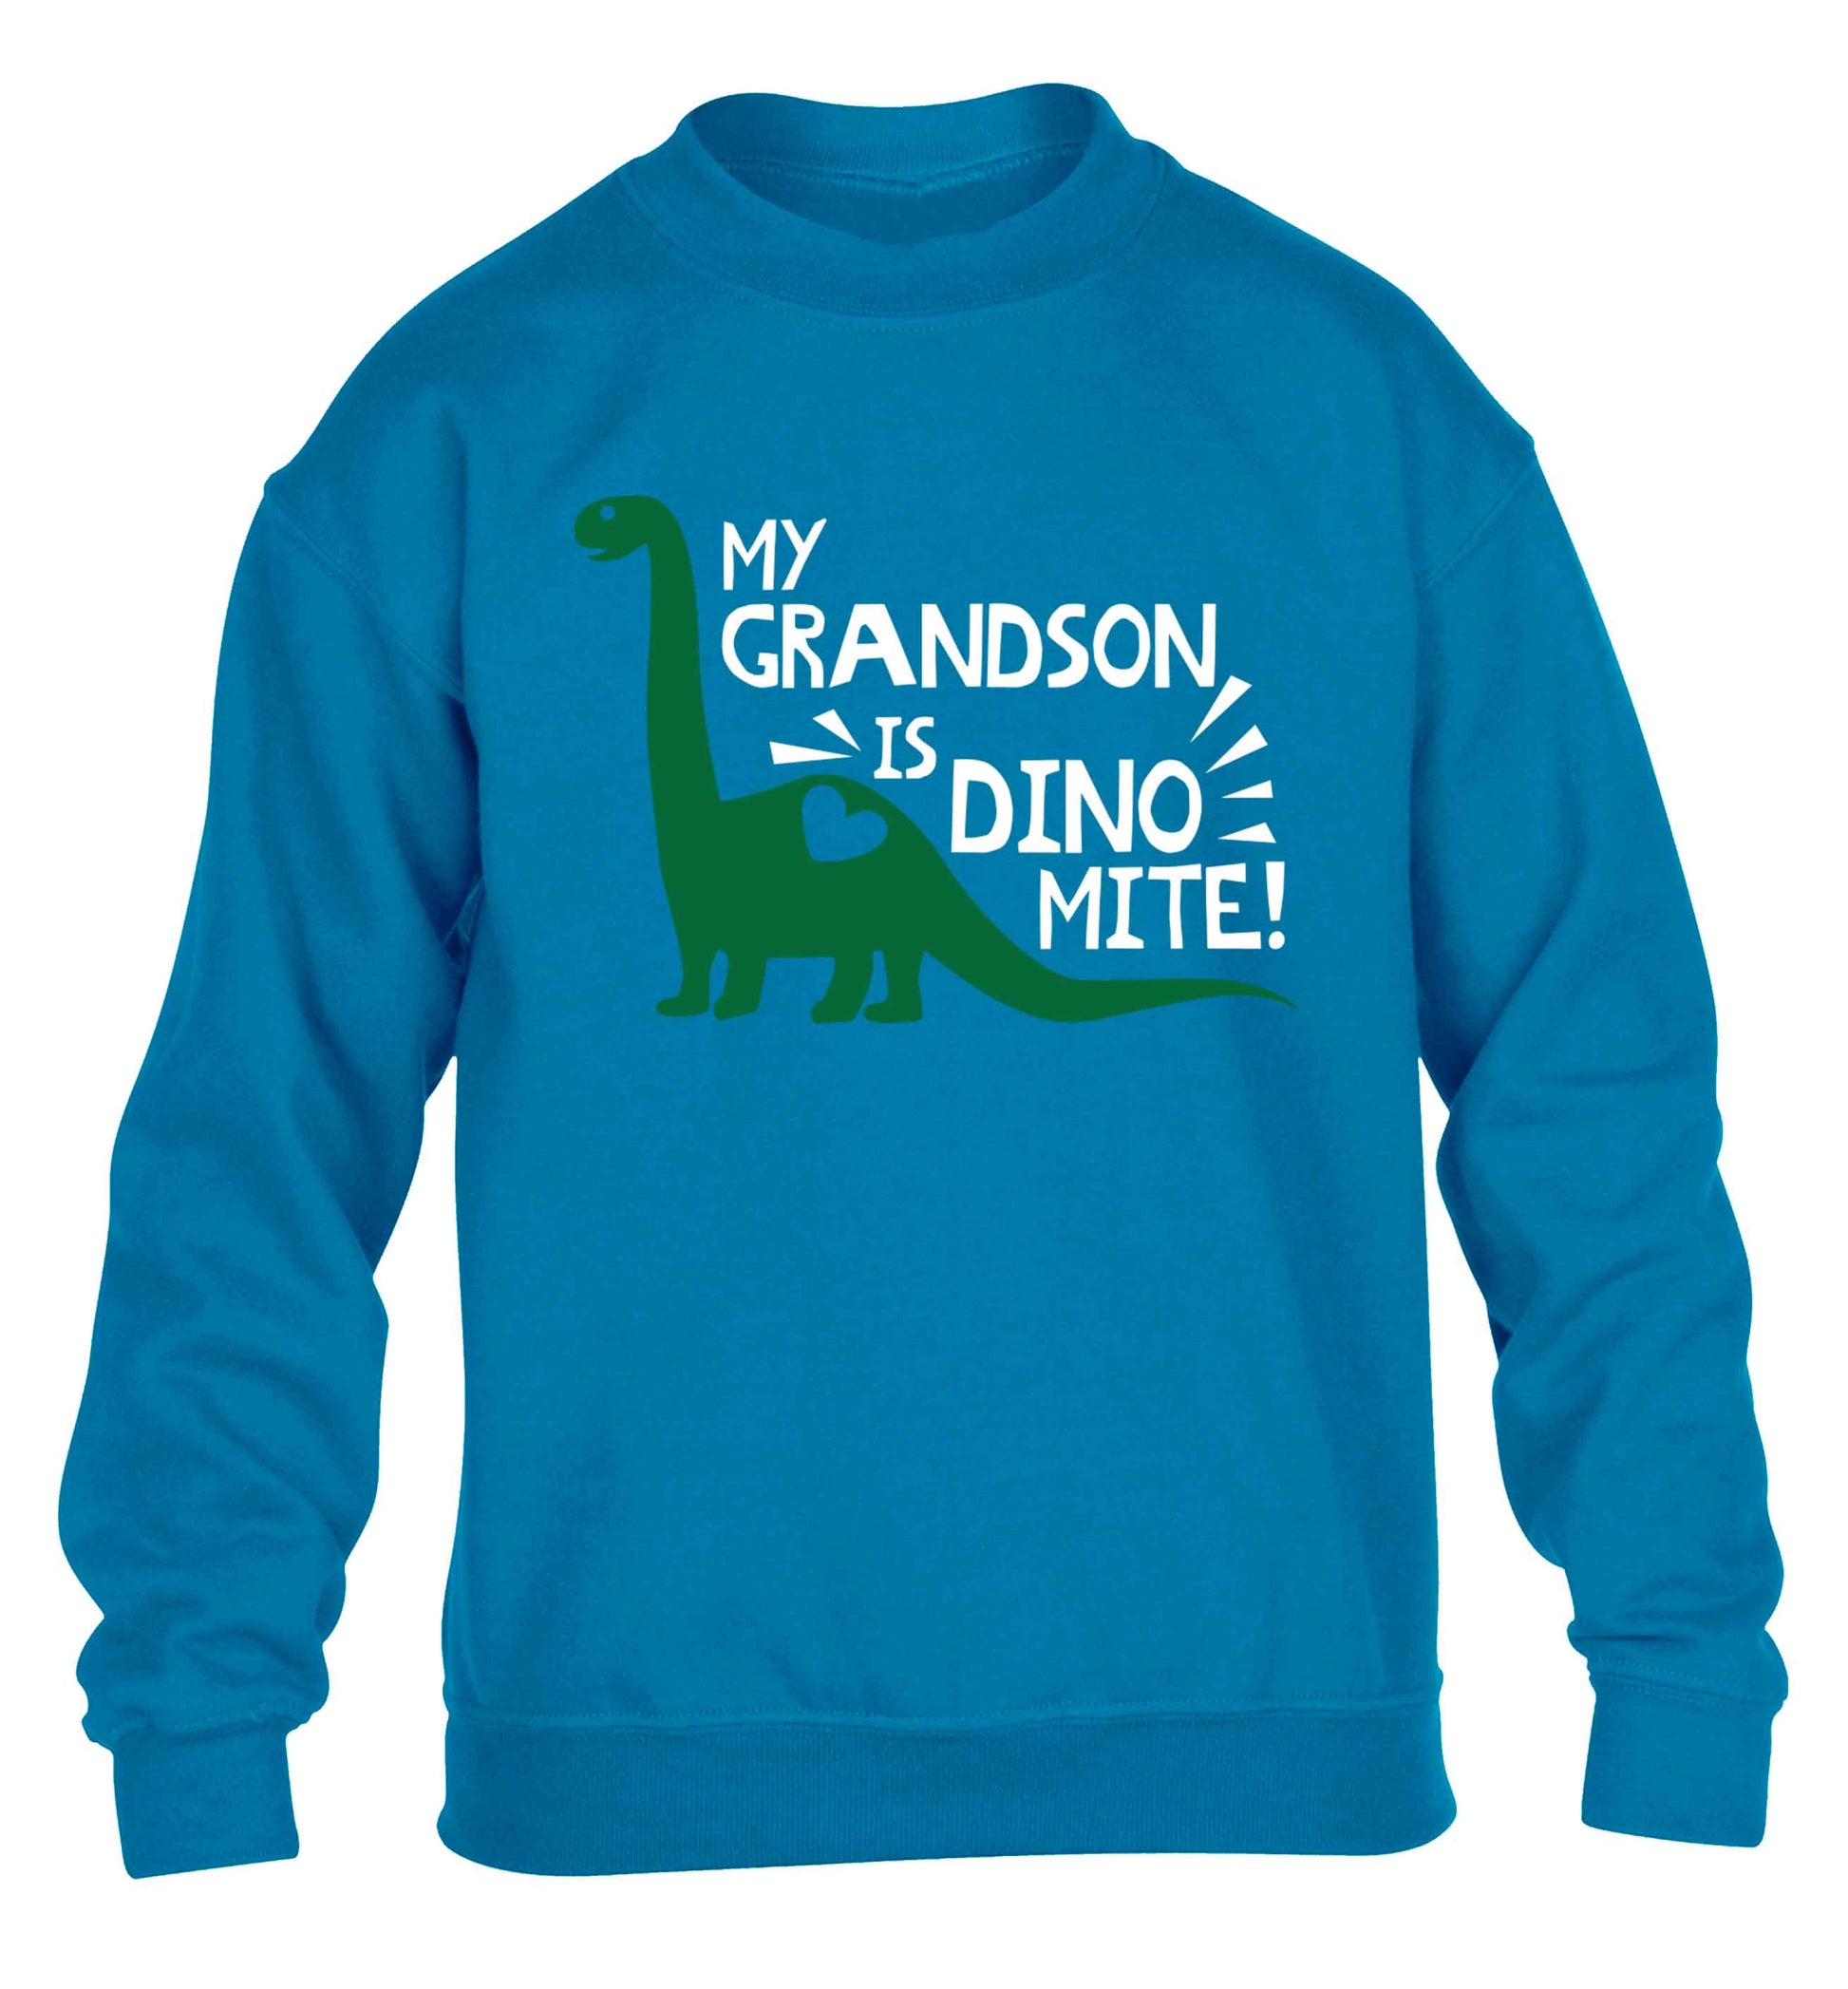 My grandson is dinomite! children's blue sweater 12-13 Years